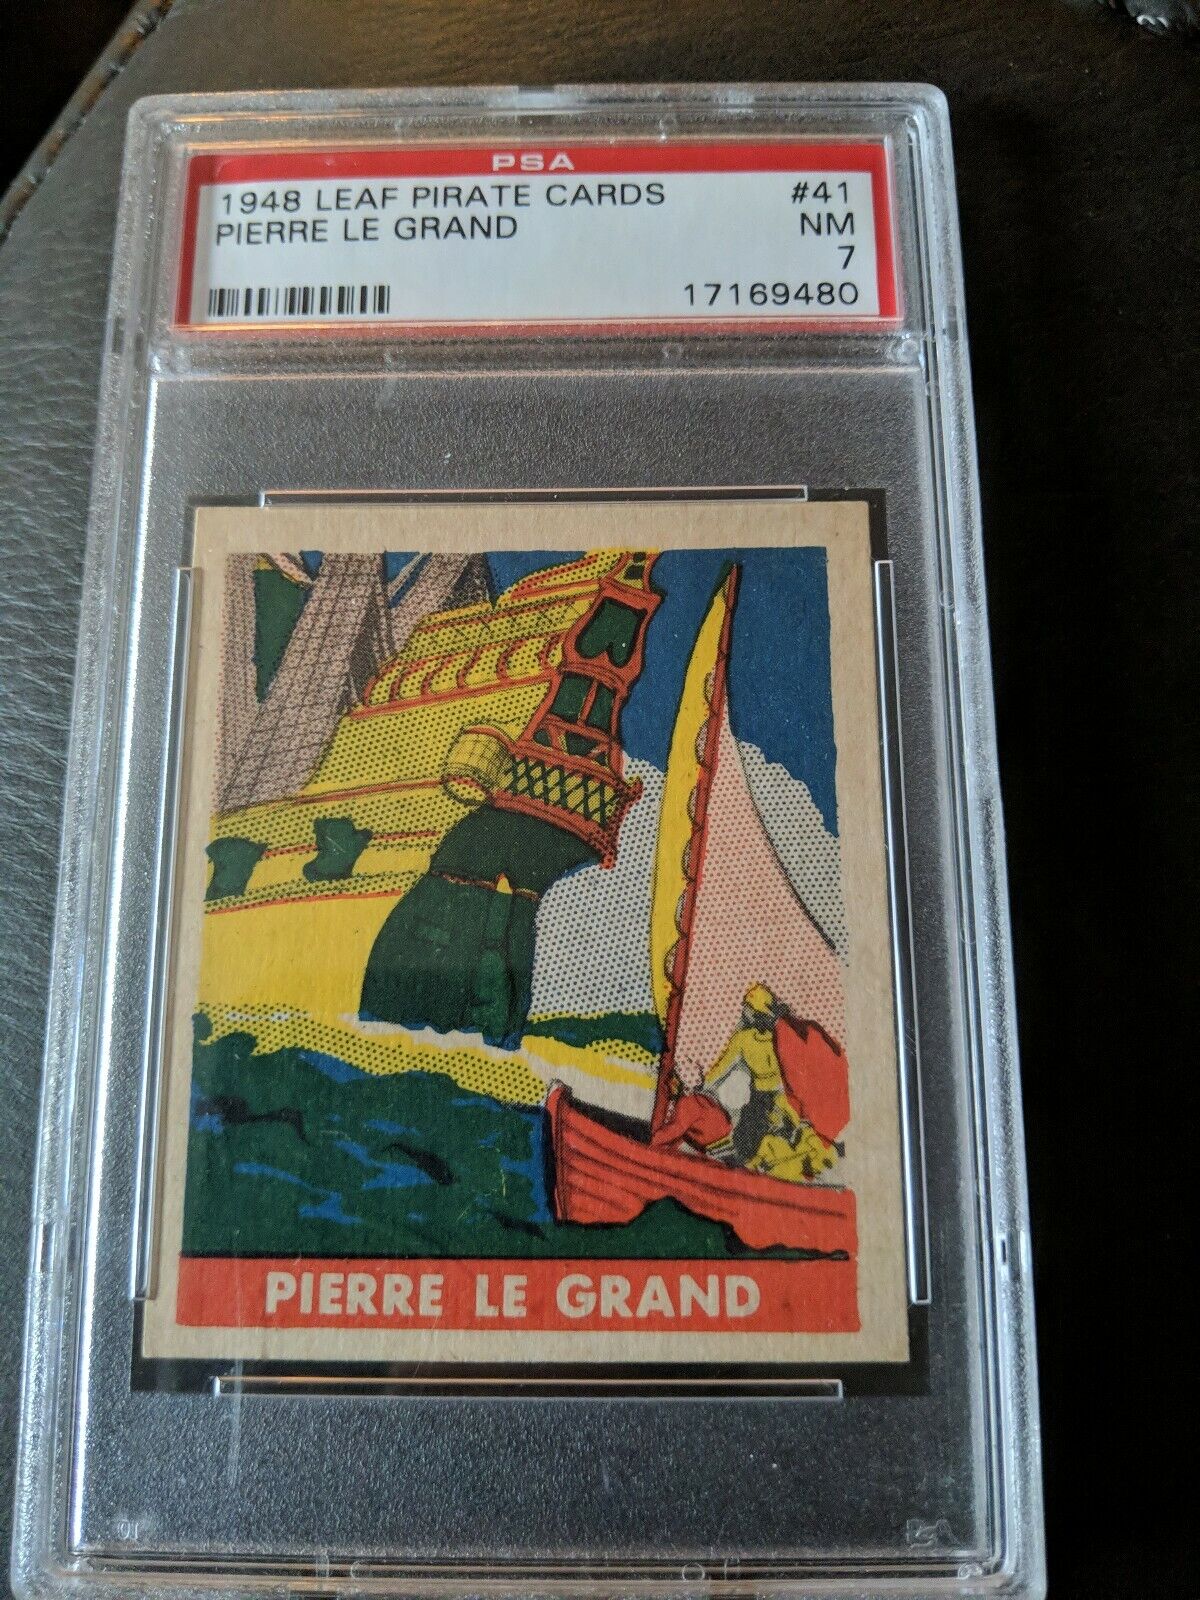 RARE 1948 Leaf Pirate Cards #41 Pierre Le Grand PSA NM 7